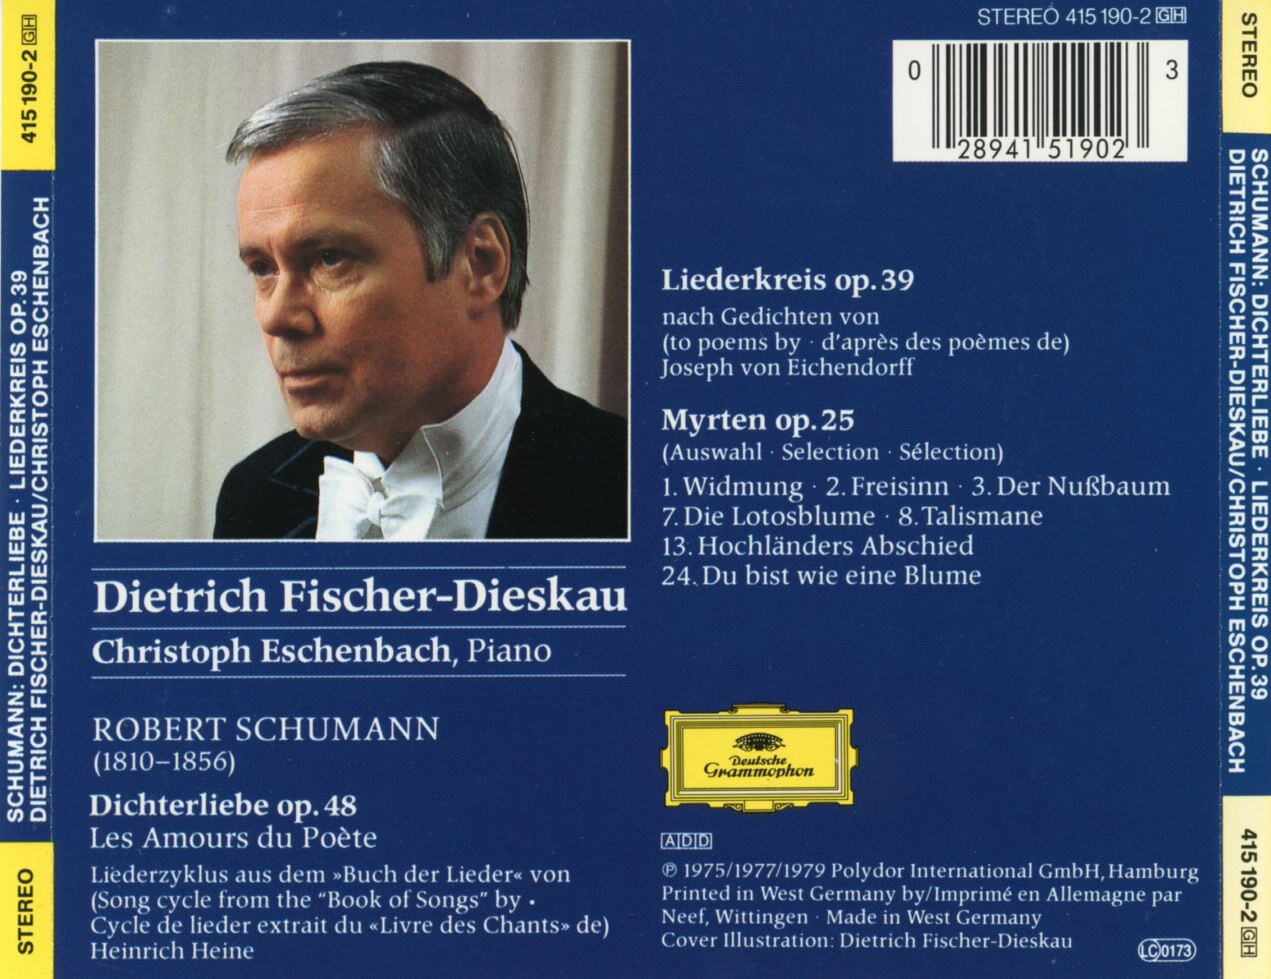 디트리히 피셔 디스카우 - Dietrich Fischer-Dieskau - Schumann Dichterliebe, Liederkreis [독일발매]